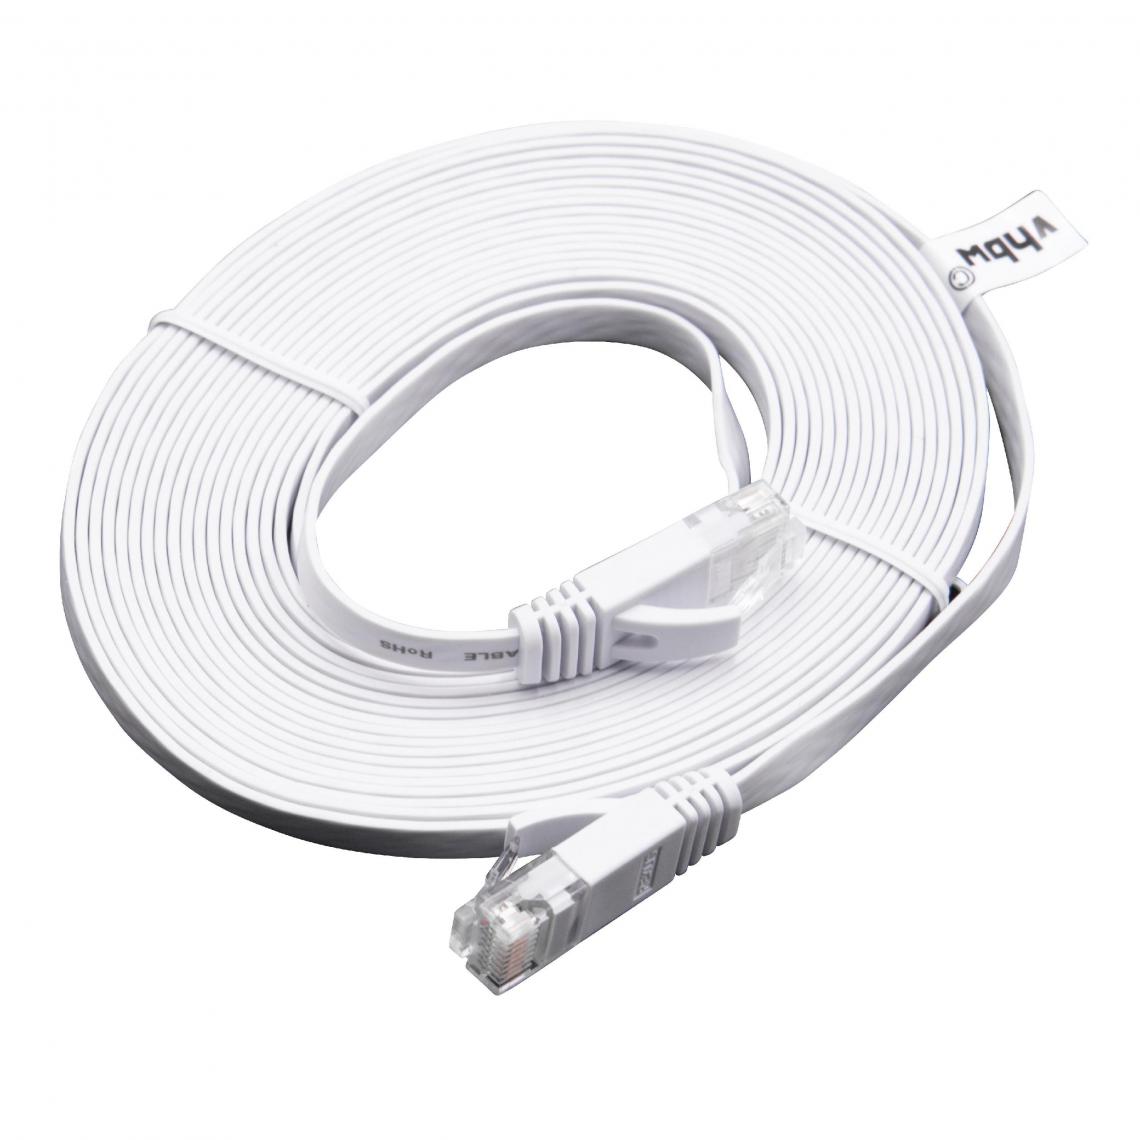 Vhbw - vhbw câble de réseau câble LAN Cat6 5m blanc câble plat - Accessoires alimentation